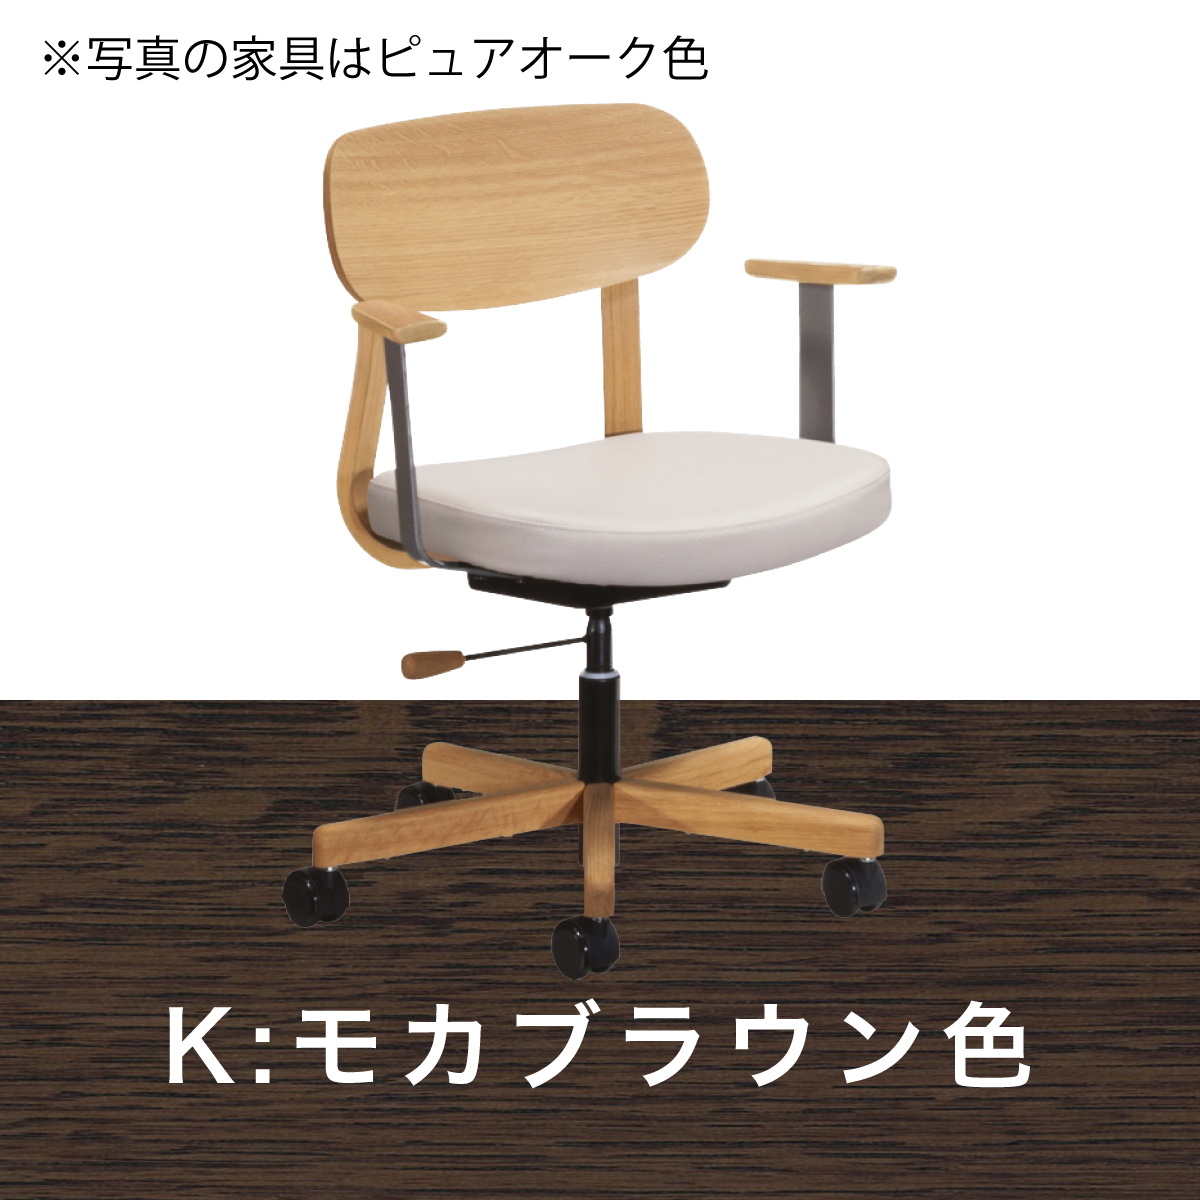 カリモク ワークチェア 肘付 デスクチェア XW3300 木製 キャスター オフィスチェア 高さ調整 学習椅子 合成皮革張り アーム付 回転椅子 国産  karimoku